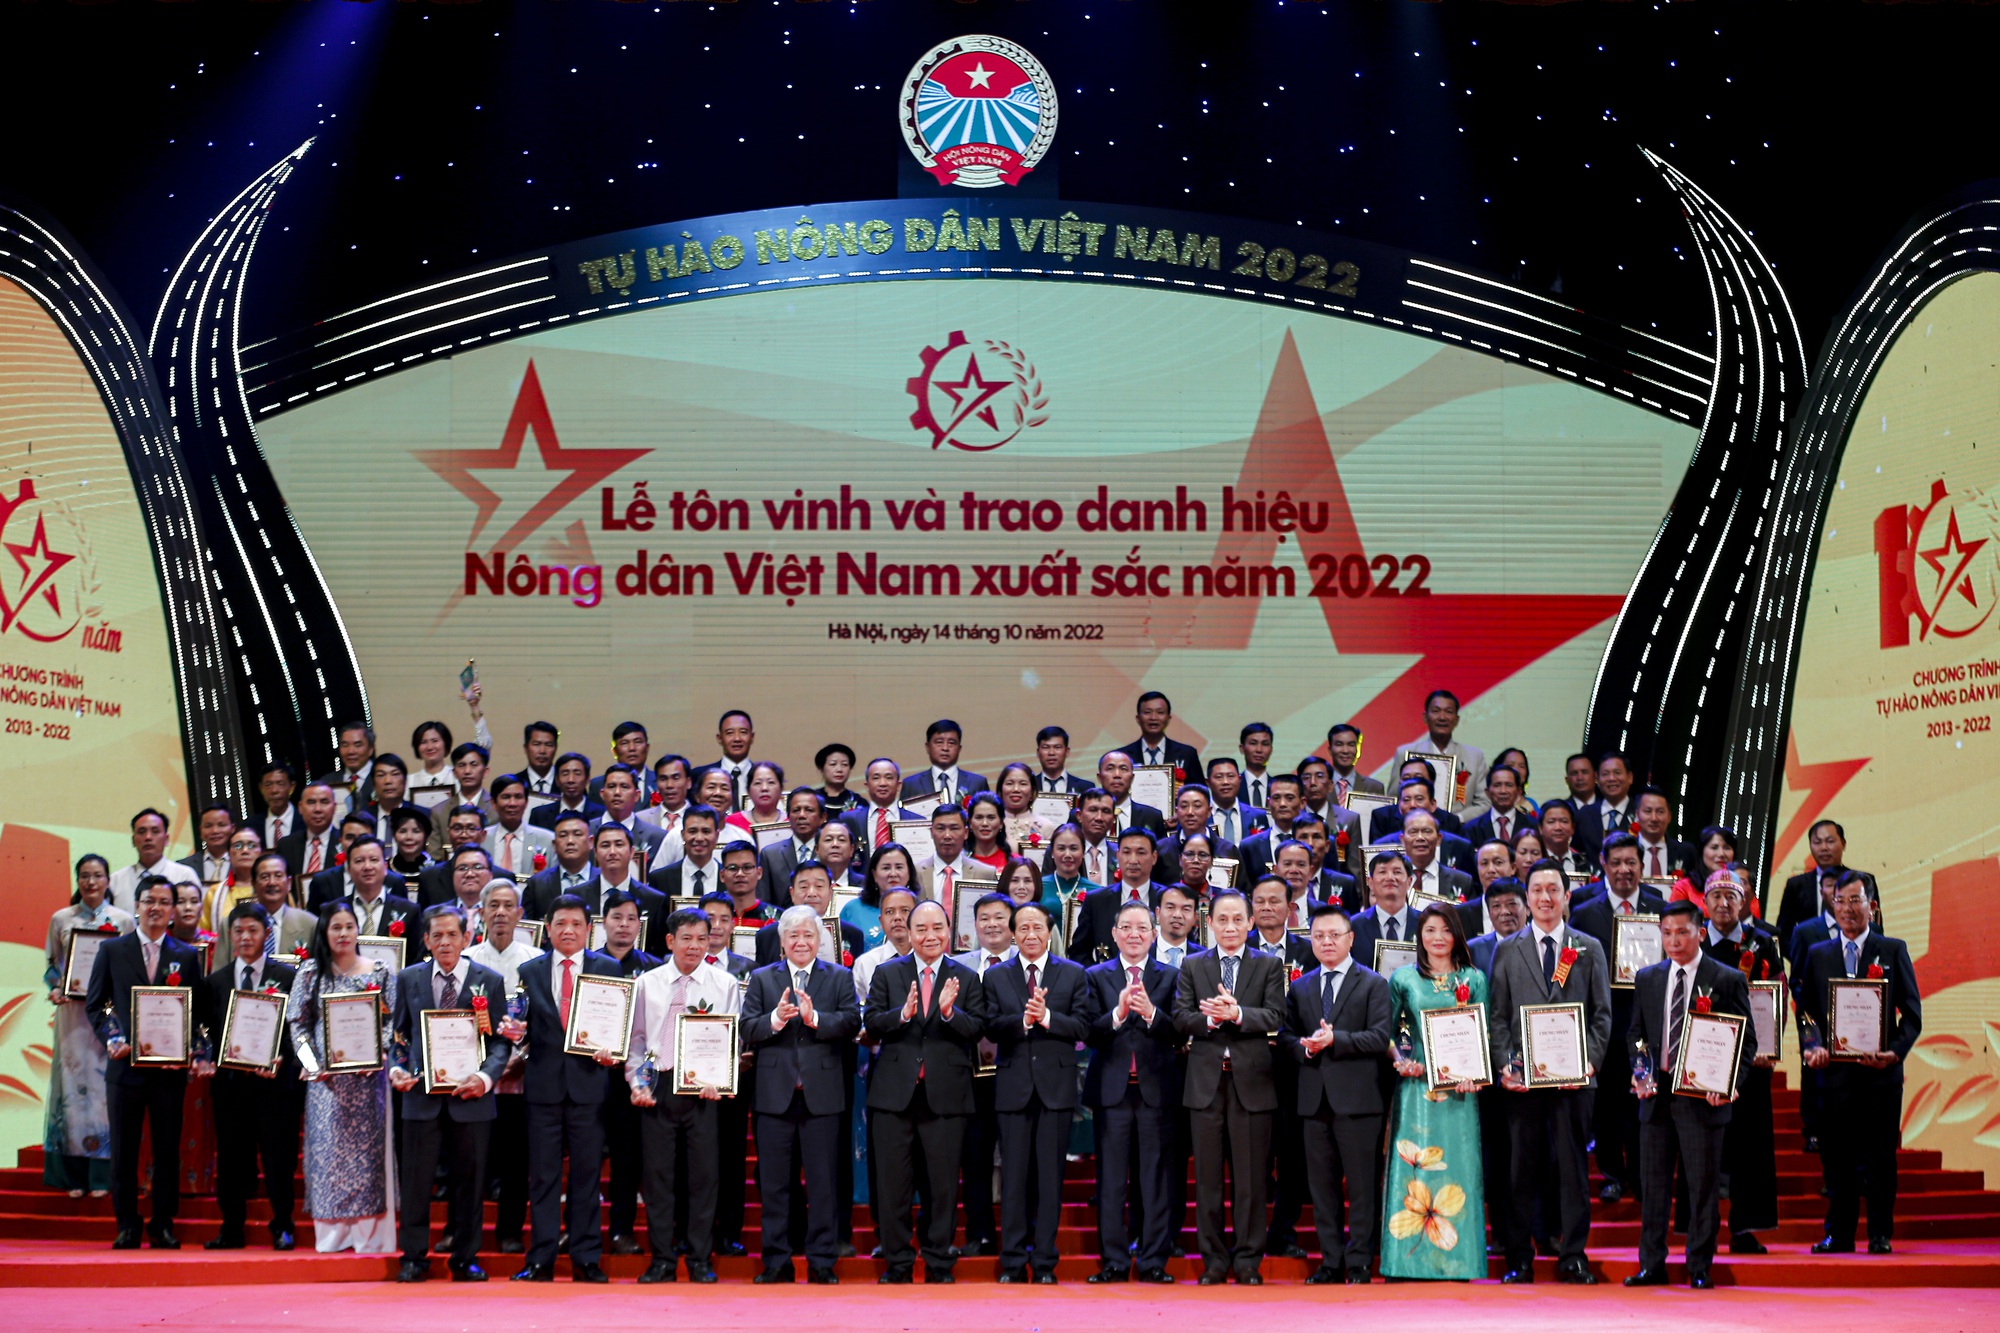 Chào đón năm mới 2023, cùng điểm lại 10 sự kiện nổi bật của Hội Nông dân Việt Nam năm 2022 - Ảnh 1.